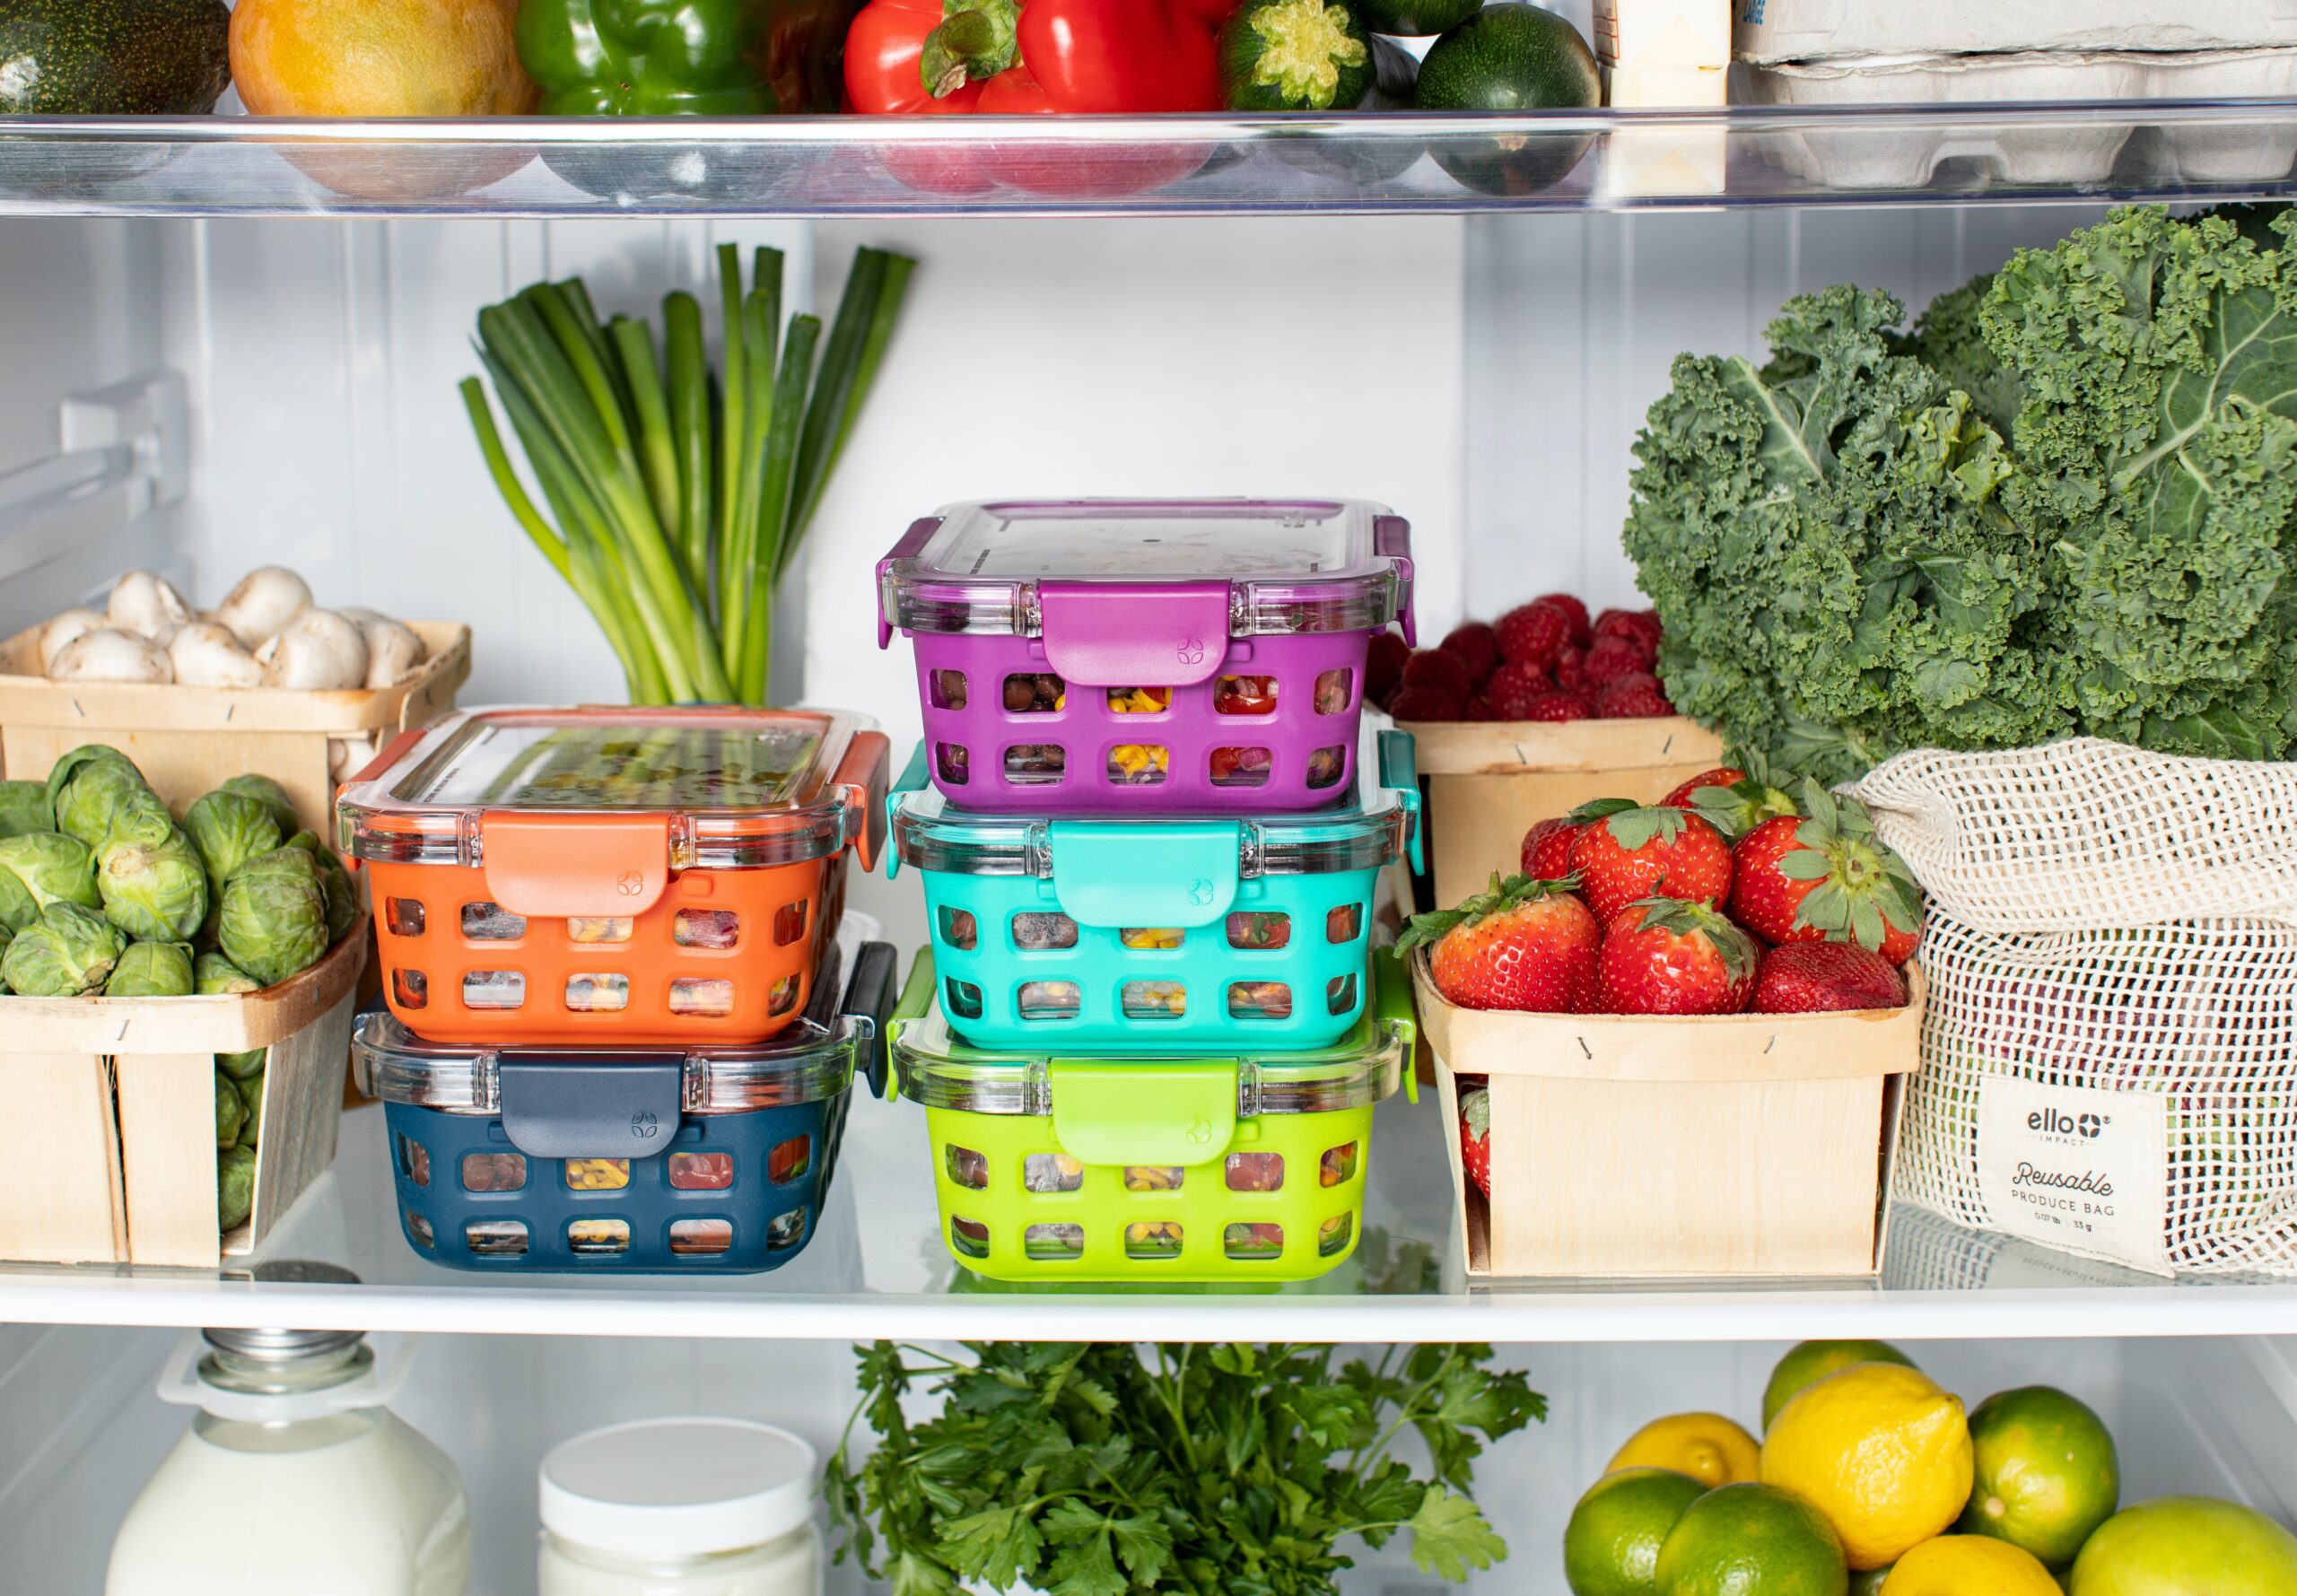 Bạn sẽ ít có khả năng đưa ra những lựa chọn không lành mạnh nếu bạn chỉ dự trữ những thực phẩm tốt trong tủ lạnh và tủ đựng thức ăn của mình. (Nguồn: Internet)